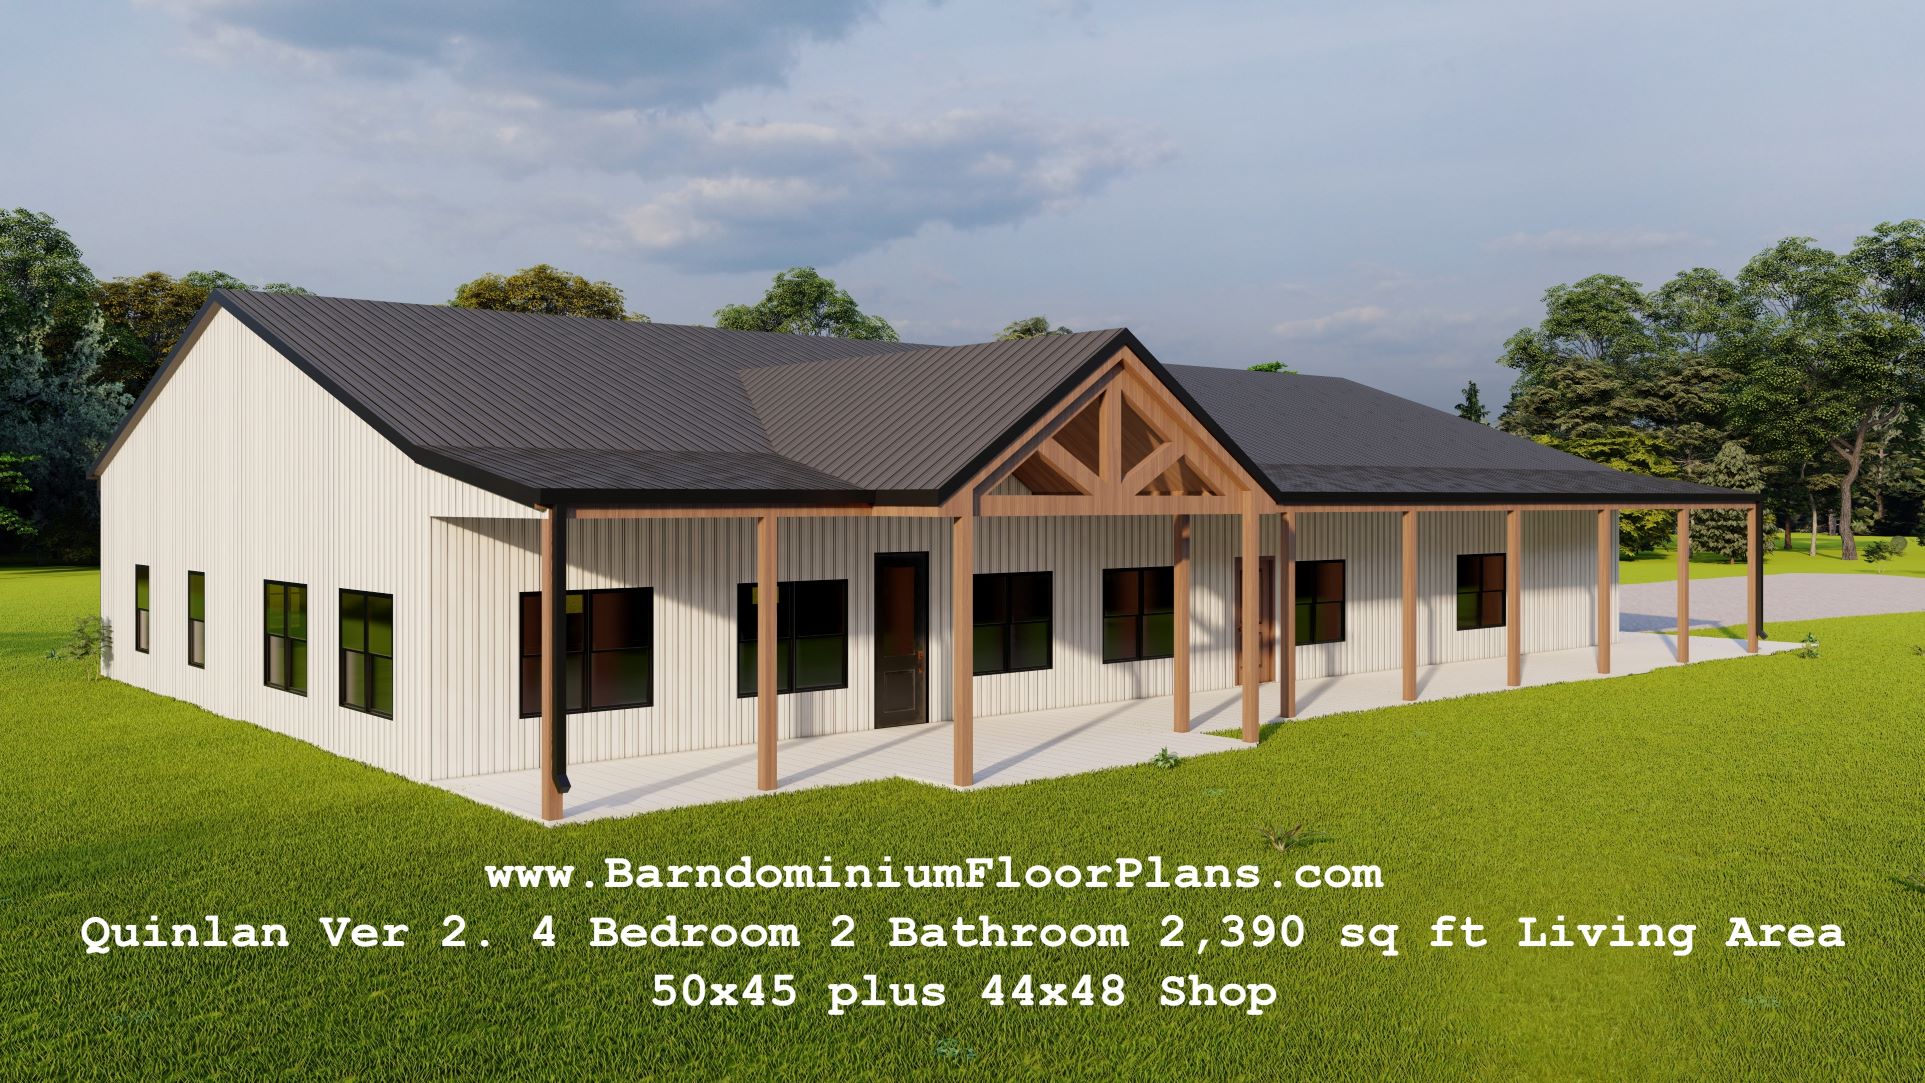 Quinlan-Ver2-4Bedroom-2Bathroom-2390-sqft-Living-Area-50x45-plus-44x48-Shop-3drender